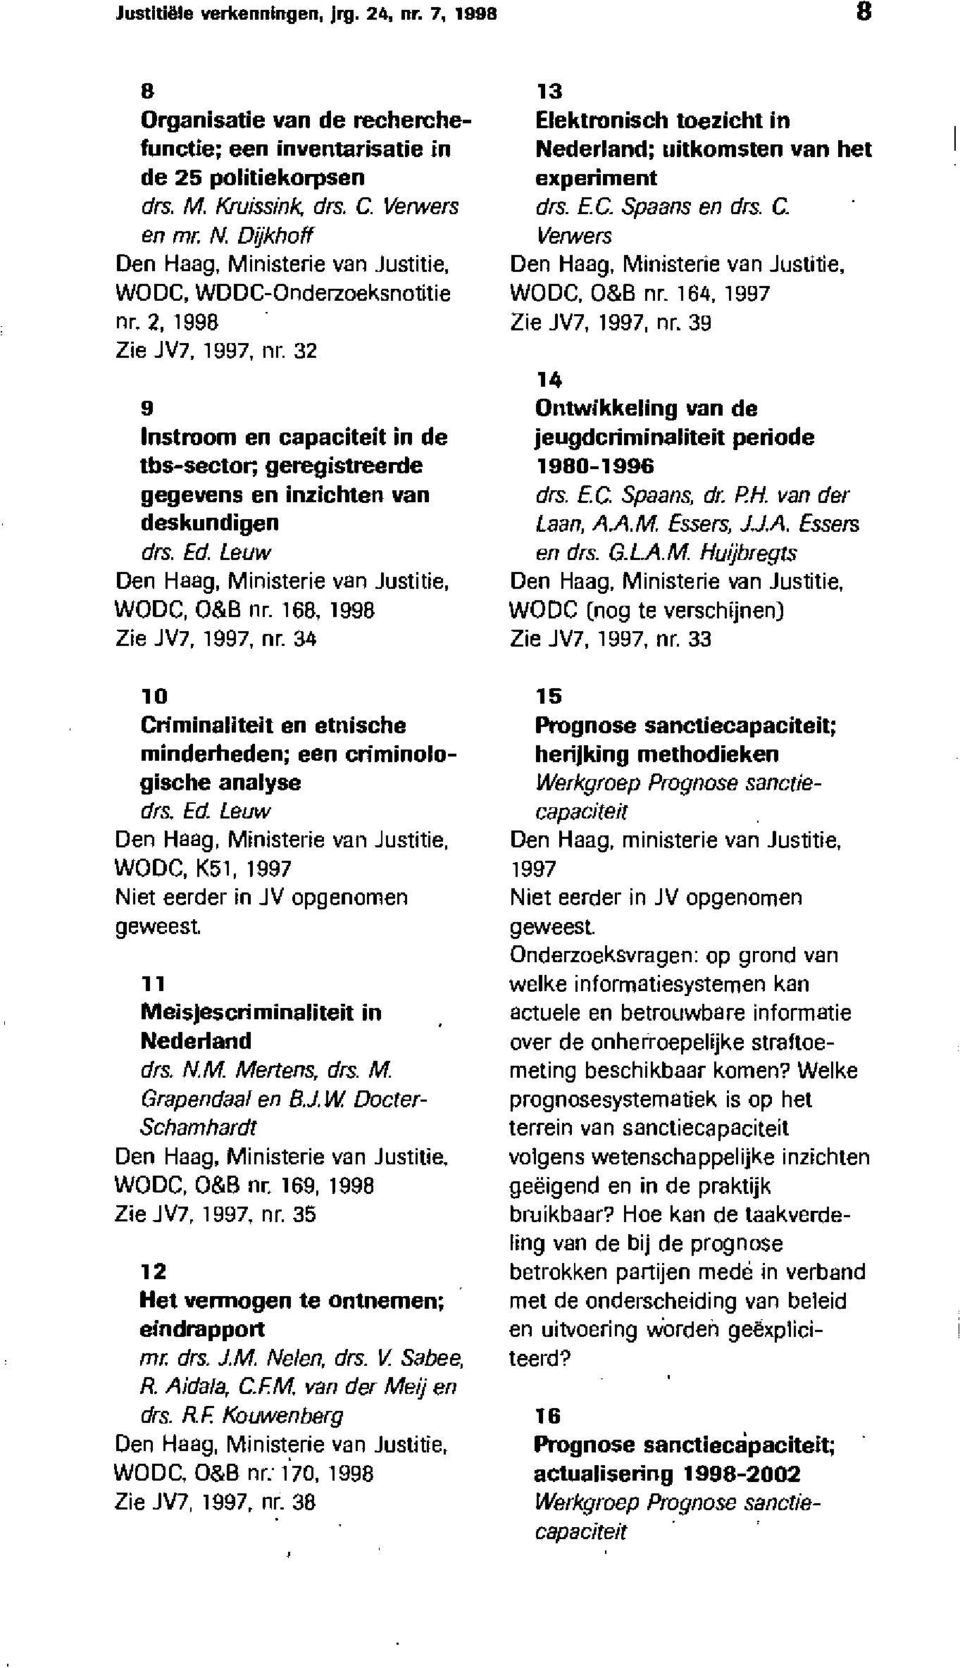 32 9 lnstroom en capaciteit in de tbs-sector; geregistreerde gegevens en inzichten van deskundigen drs. Ed Leuw Den Haag, Ministerie van Justitie, WODC, O&B nr. 168, 1998 Zie JV7, 1997, nr.